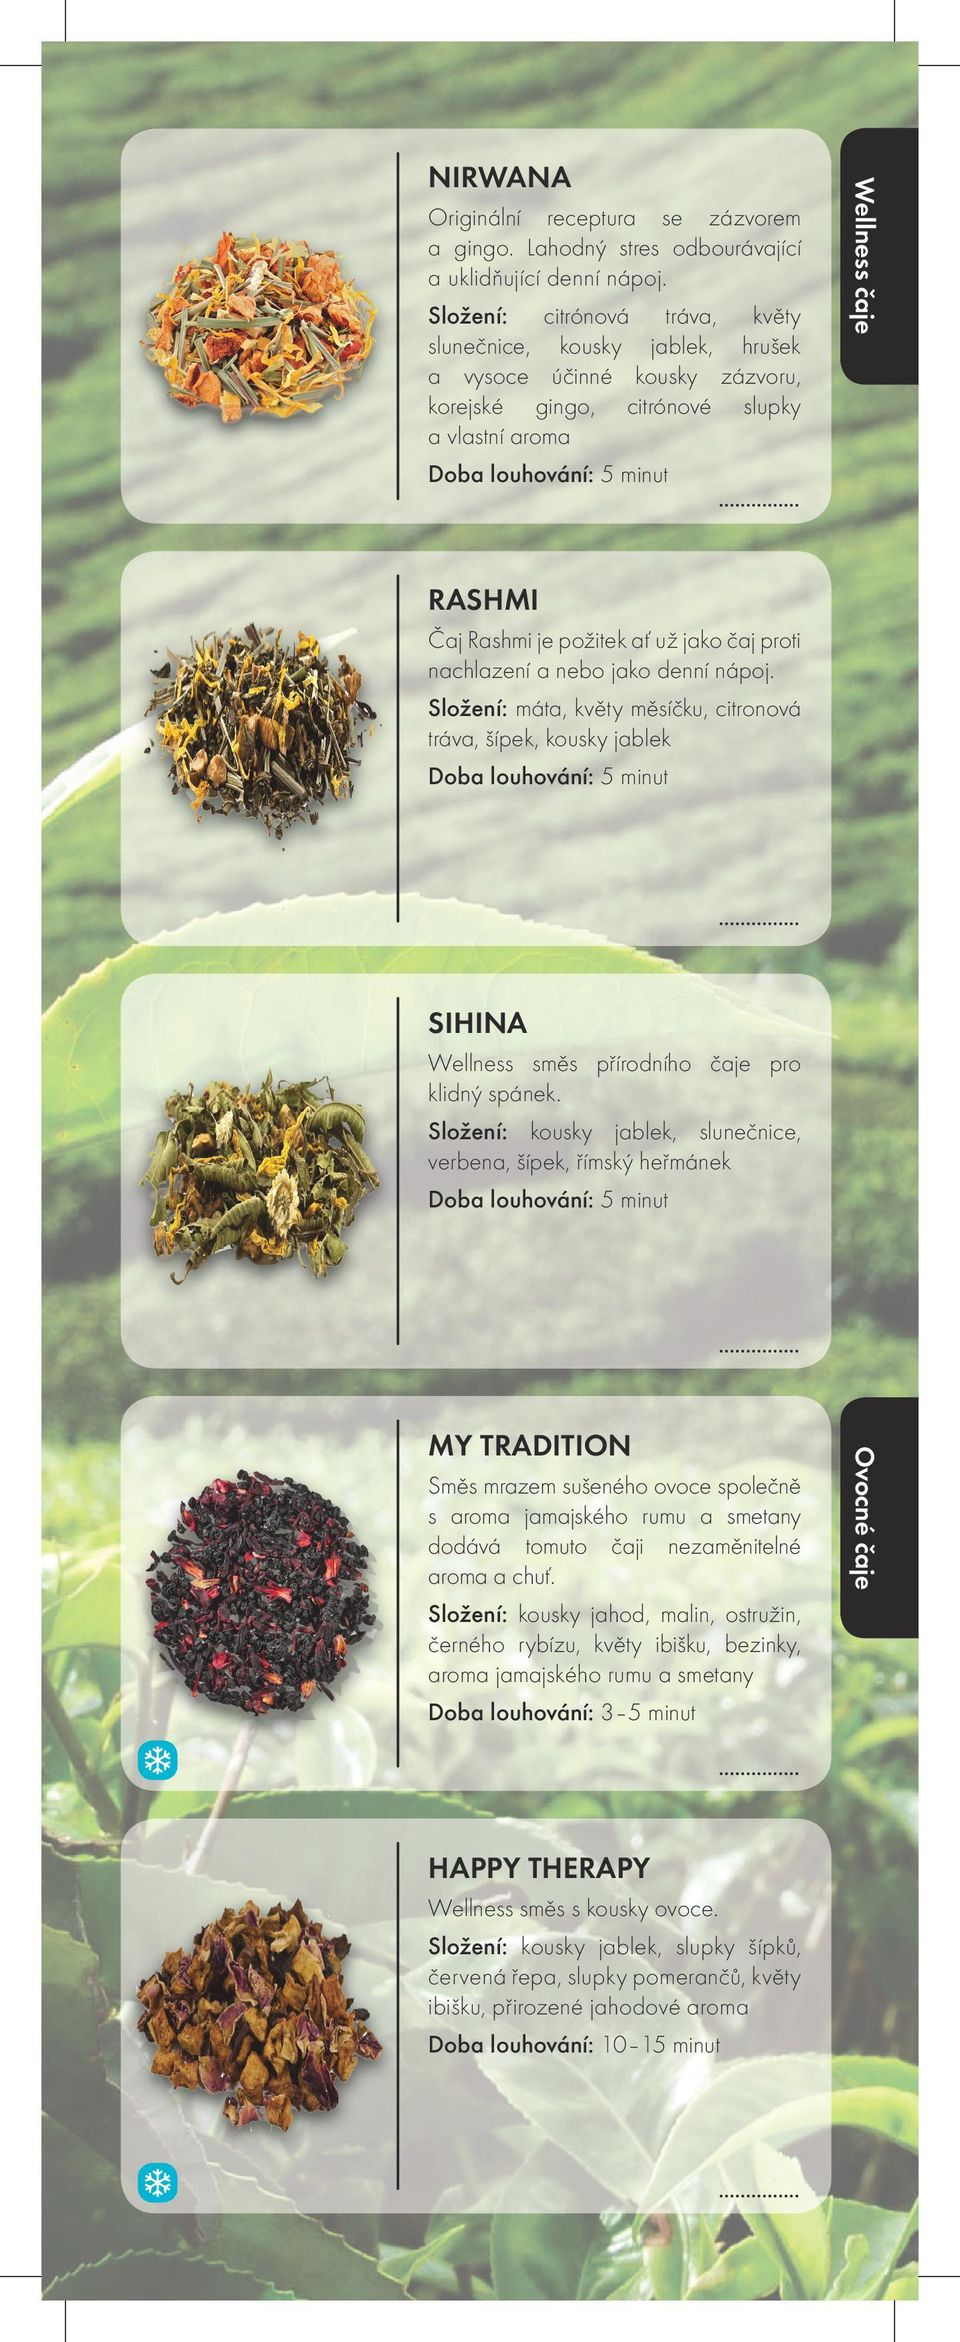 Čaj Rashmi je požitek ať už jako čaj proti nachlazení a nebo jako denní nápoj.